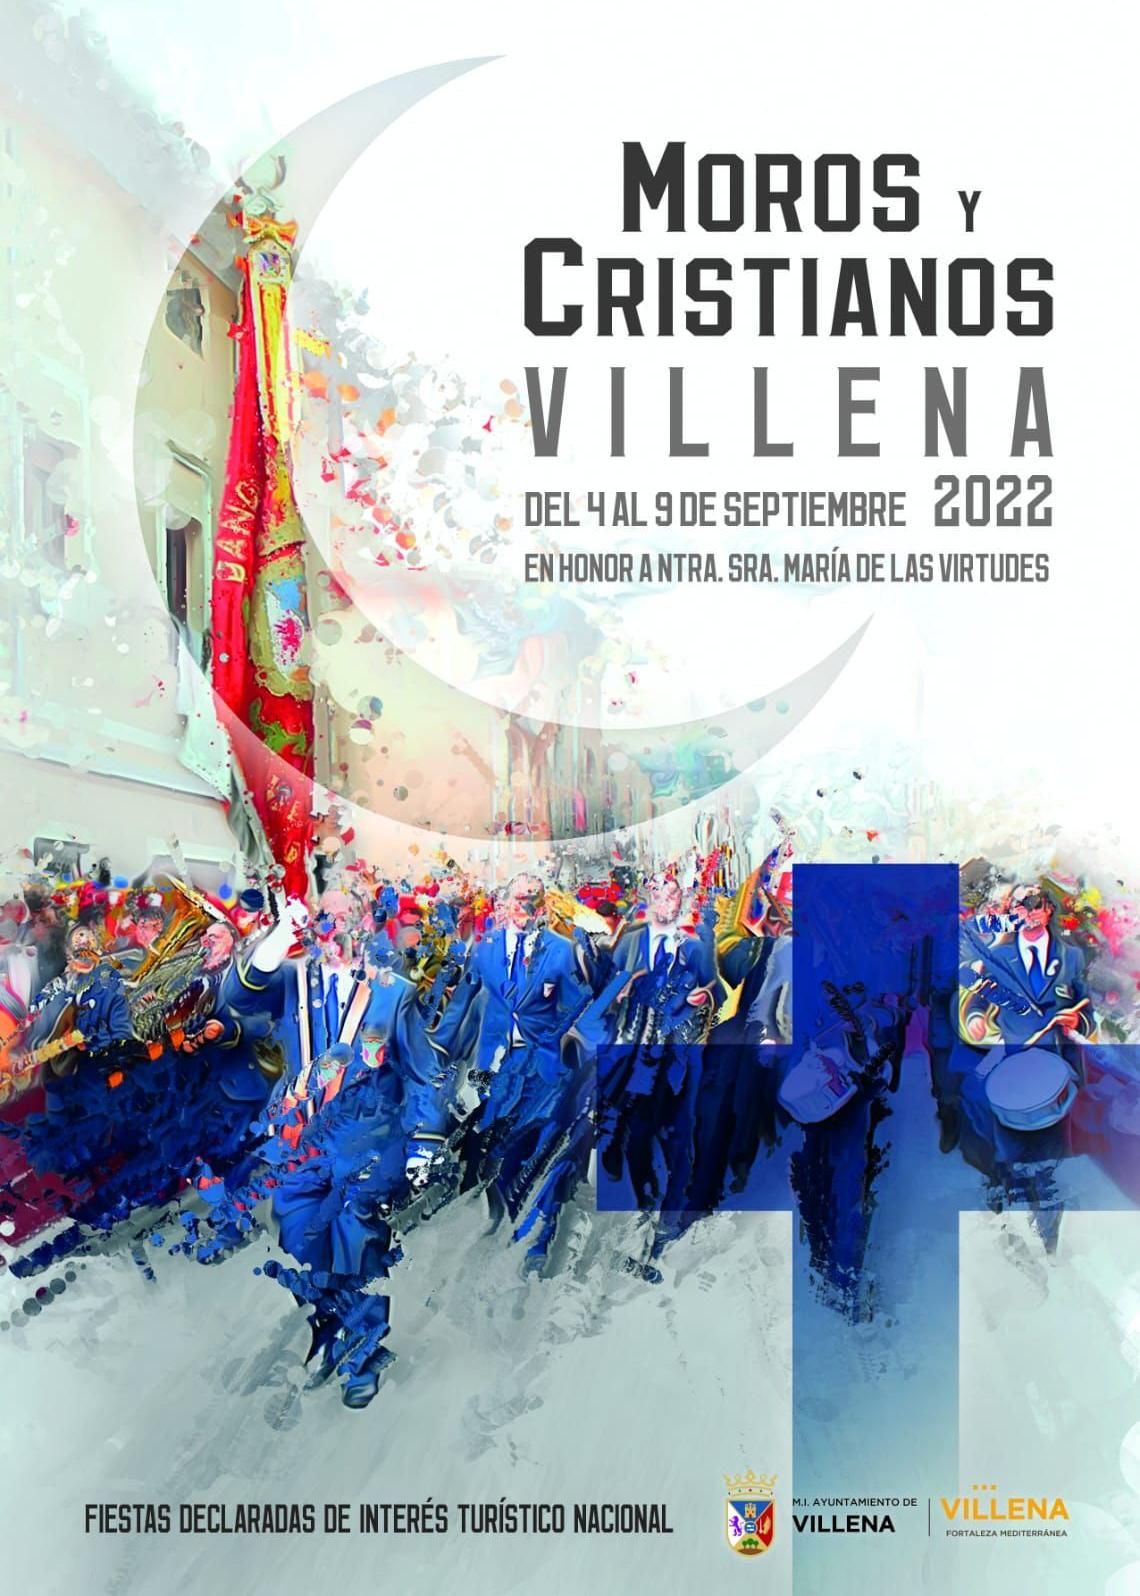 El cartel anunciador de las fiestas de Moros y Cristianos de Villena para este año.